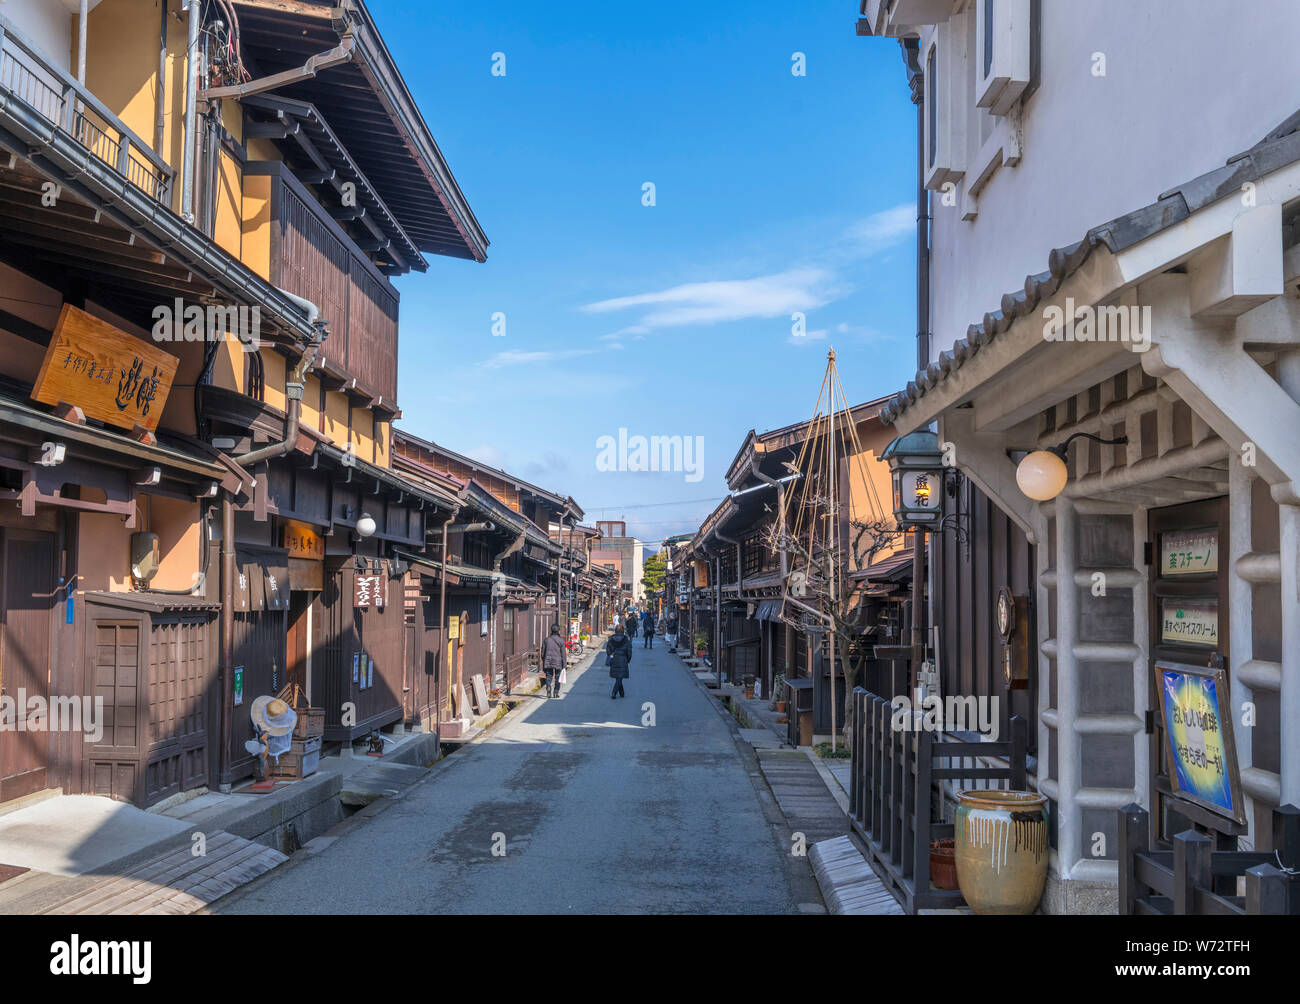 Traditionelle japanische Bauten auf Kamisannomachi, eine Straße in der historischen Altstadt Sanmachi-suji Bezirk, Takayama, Präfektur Gifu, Honshu, Japan Stockfoto